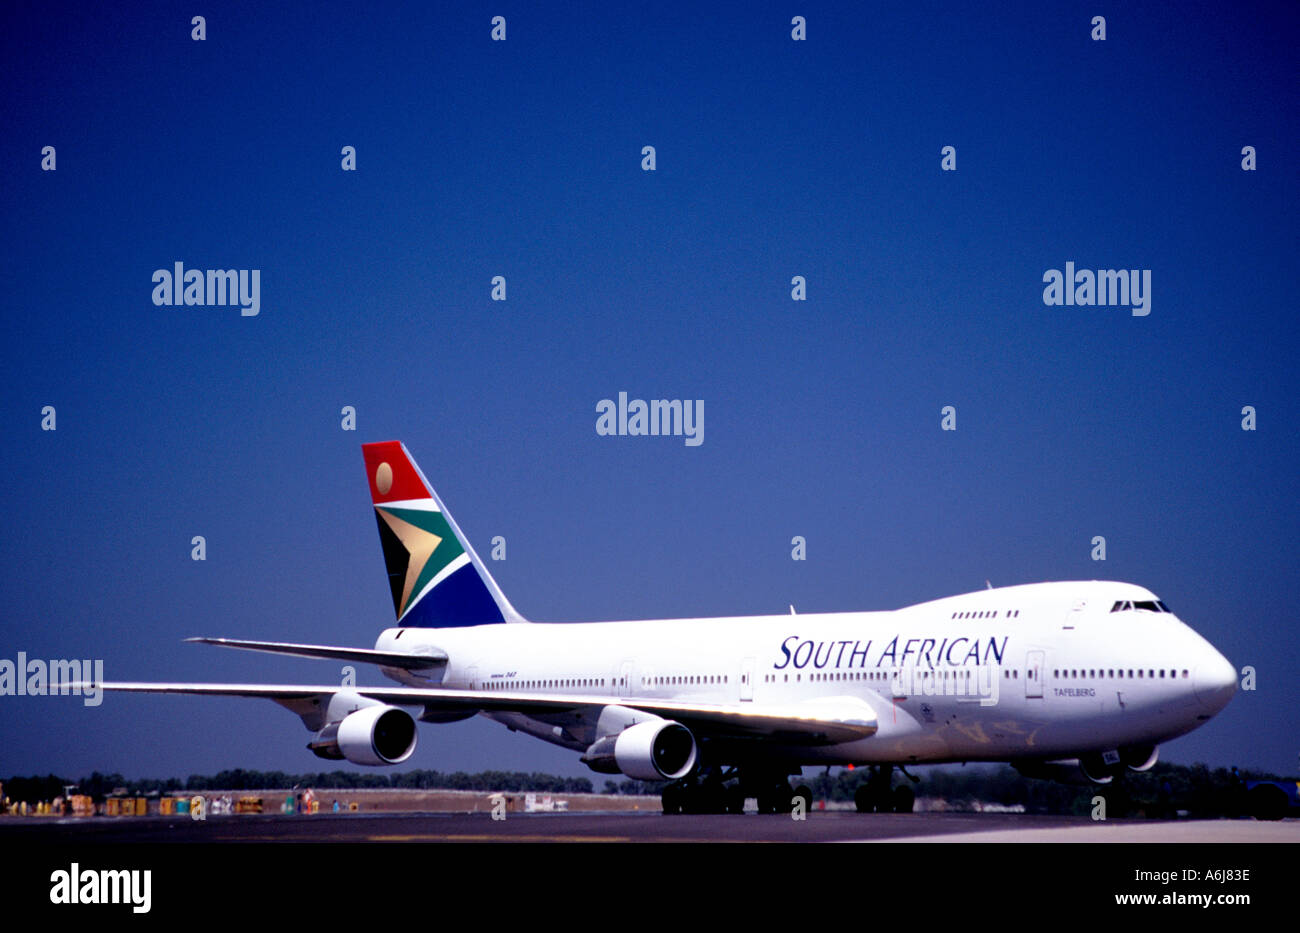 A South African Airways Boeing 747 sur le tarmac de l'aéroport international de Cape Town. Banque D'Images